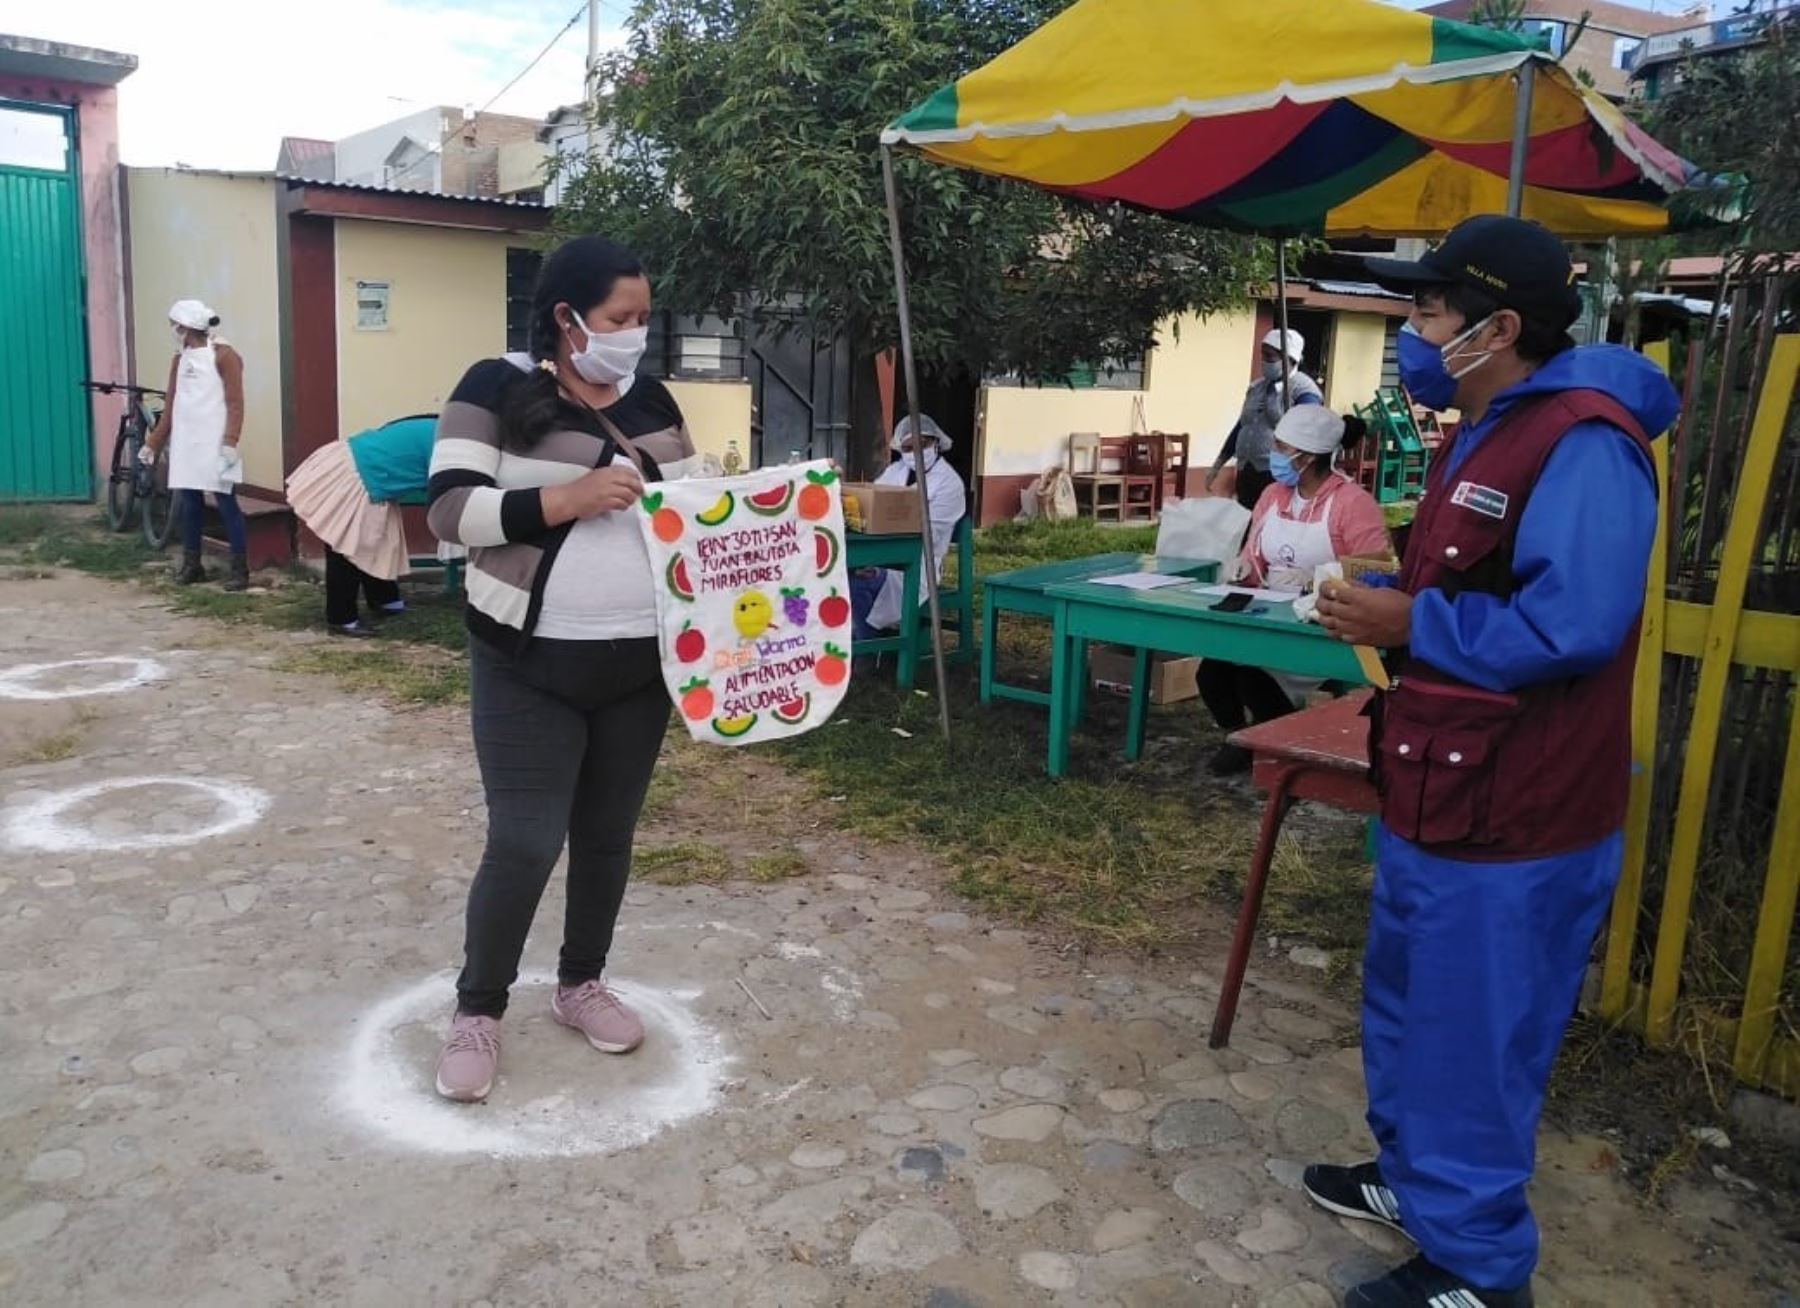 Madres y padres de familia del distrito de Pilcomayo, en Junín, aprovechan los costales de arroz para elaborar útiles bolsas ecológicas para llevar los productos que entrega Qali Warma. ANDINA/Difusión